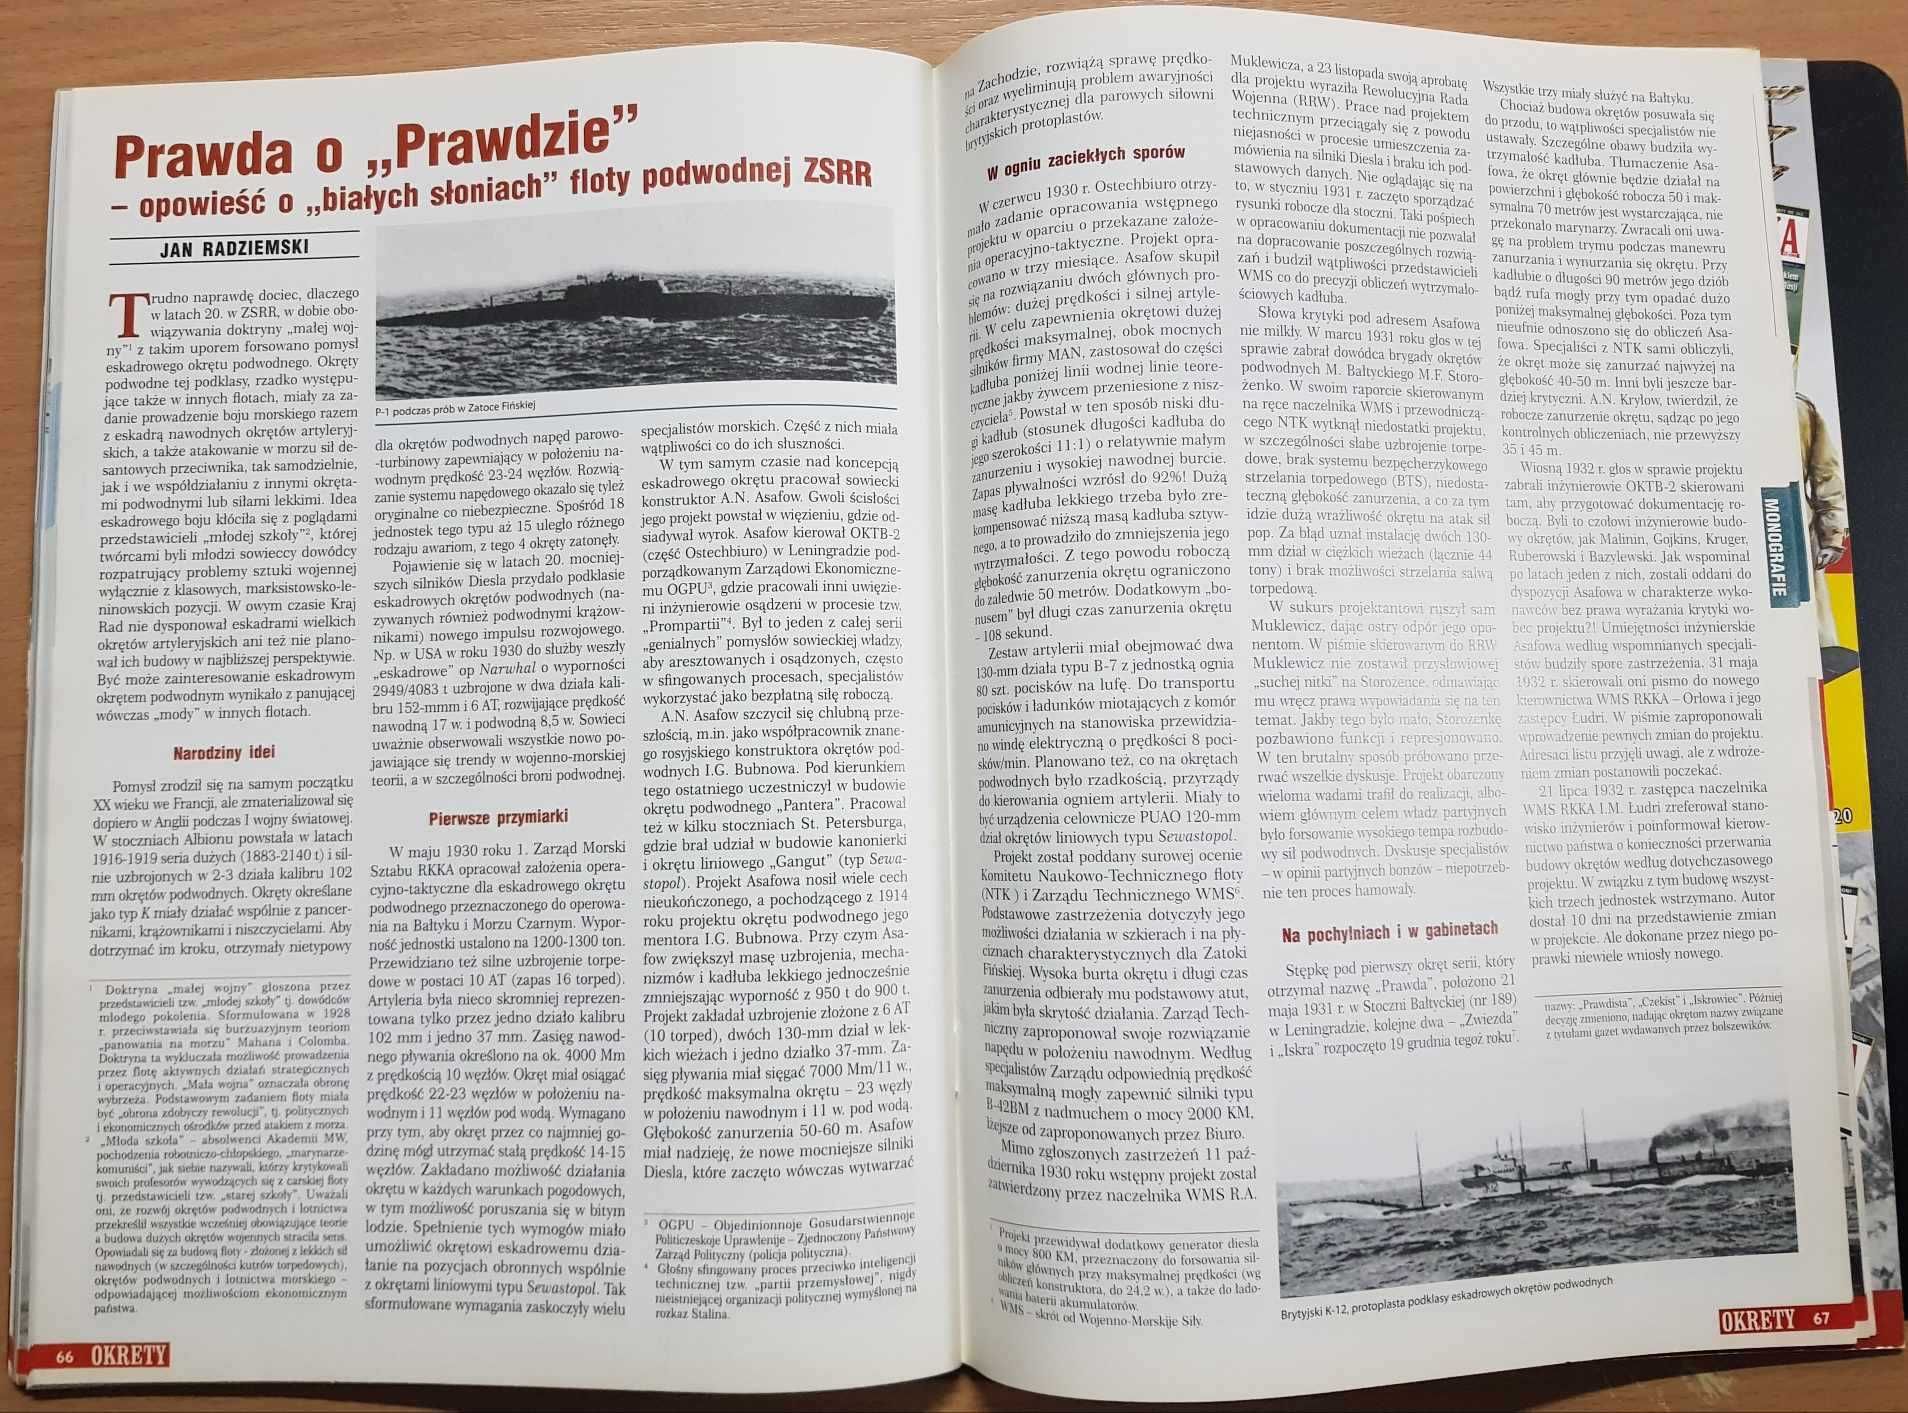 Okręty nr 9 (10) 2011 - magazyn historyczno-wojskowy